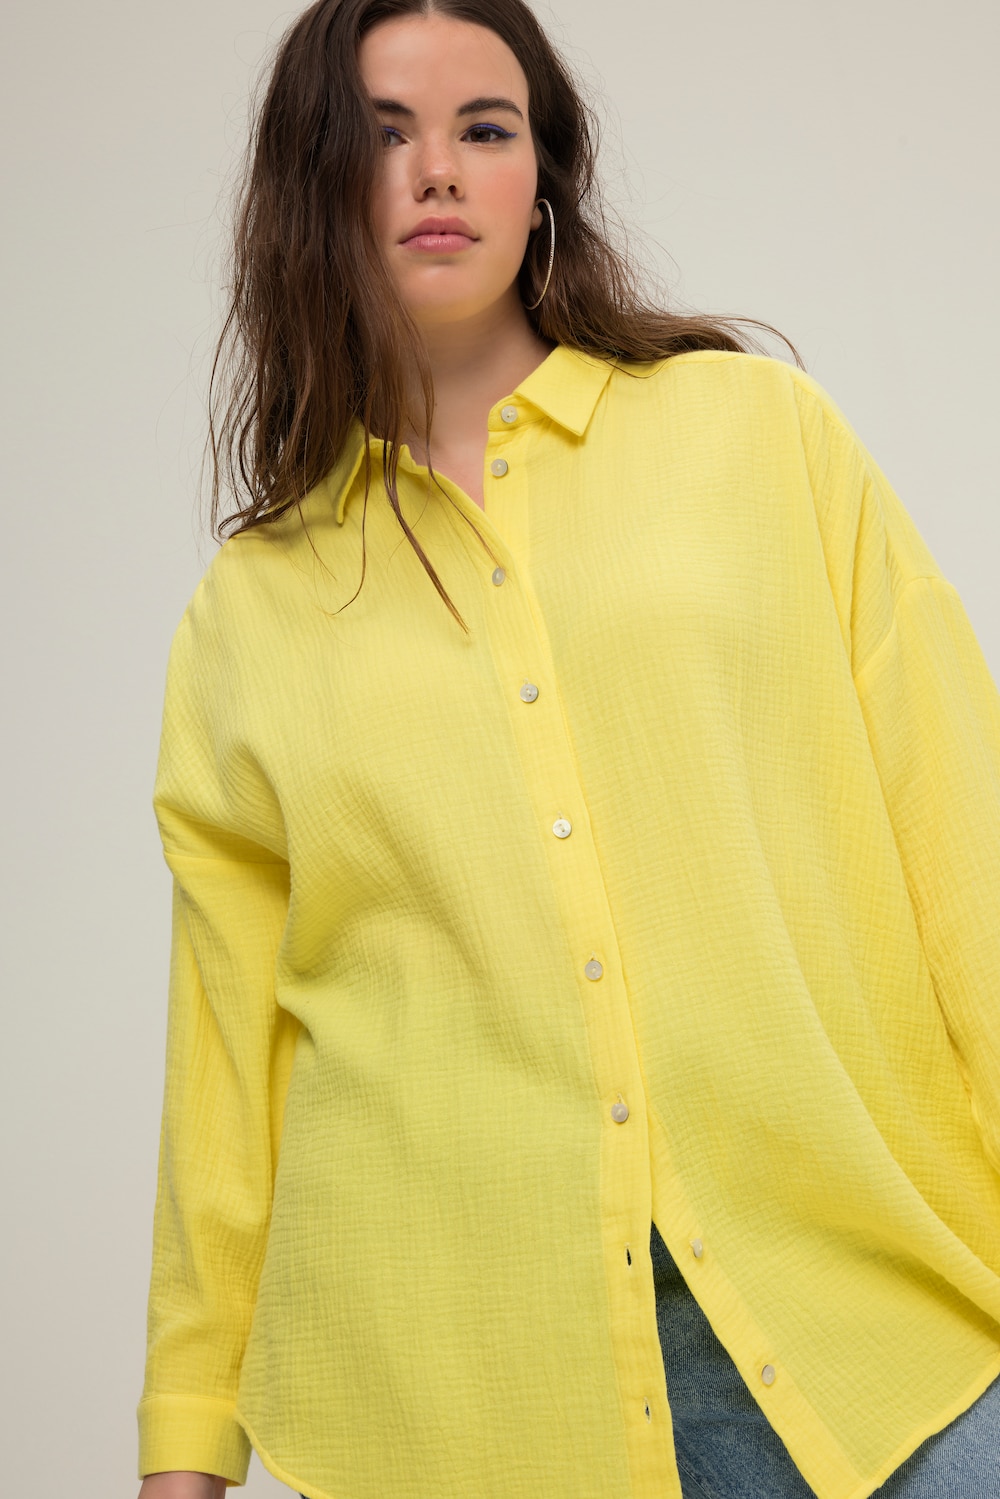 Grote Maten Mousseline blouse, Dames, geel, Maat: 58/60, Katoen, Studio Untold